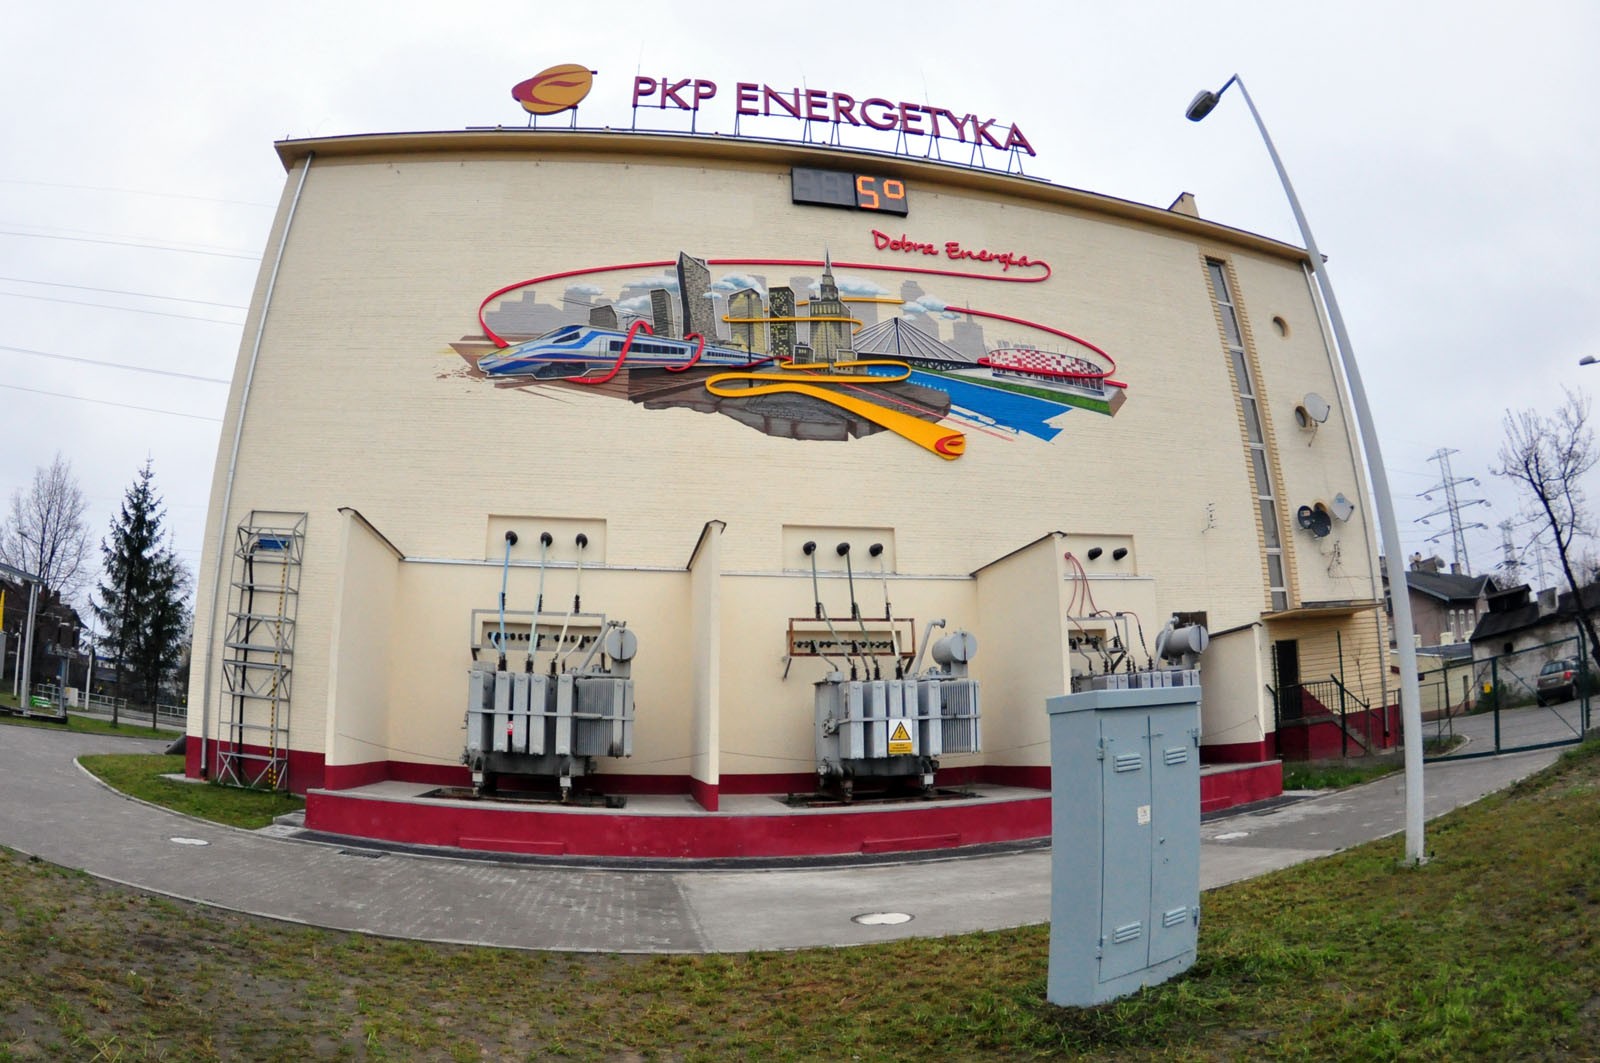 PKP Energetyka S.A. Gute Energie Mural Fassadenbild in Warschau | Gute Energie | Portfolio